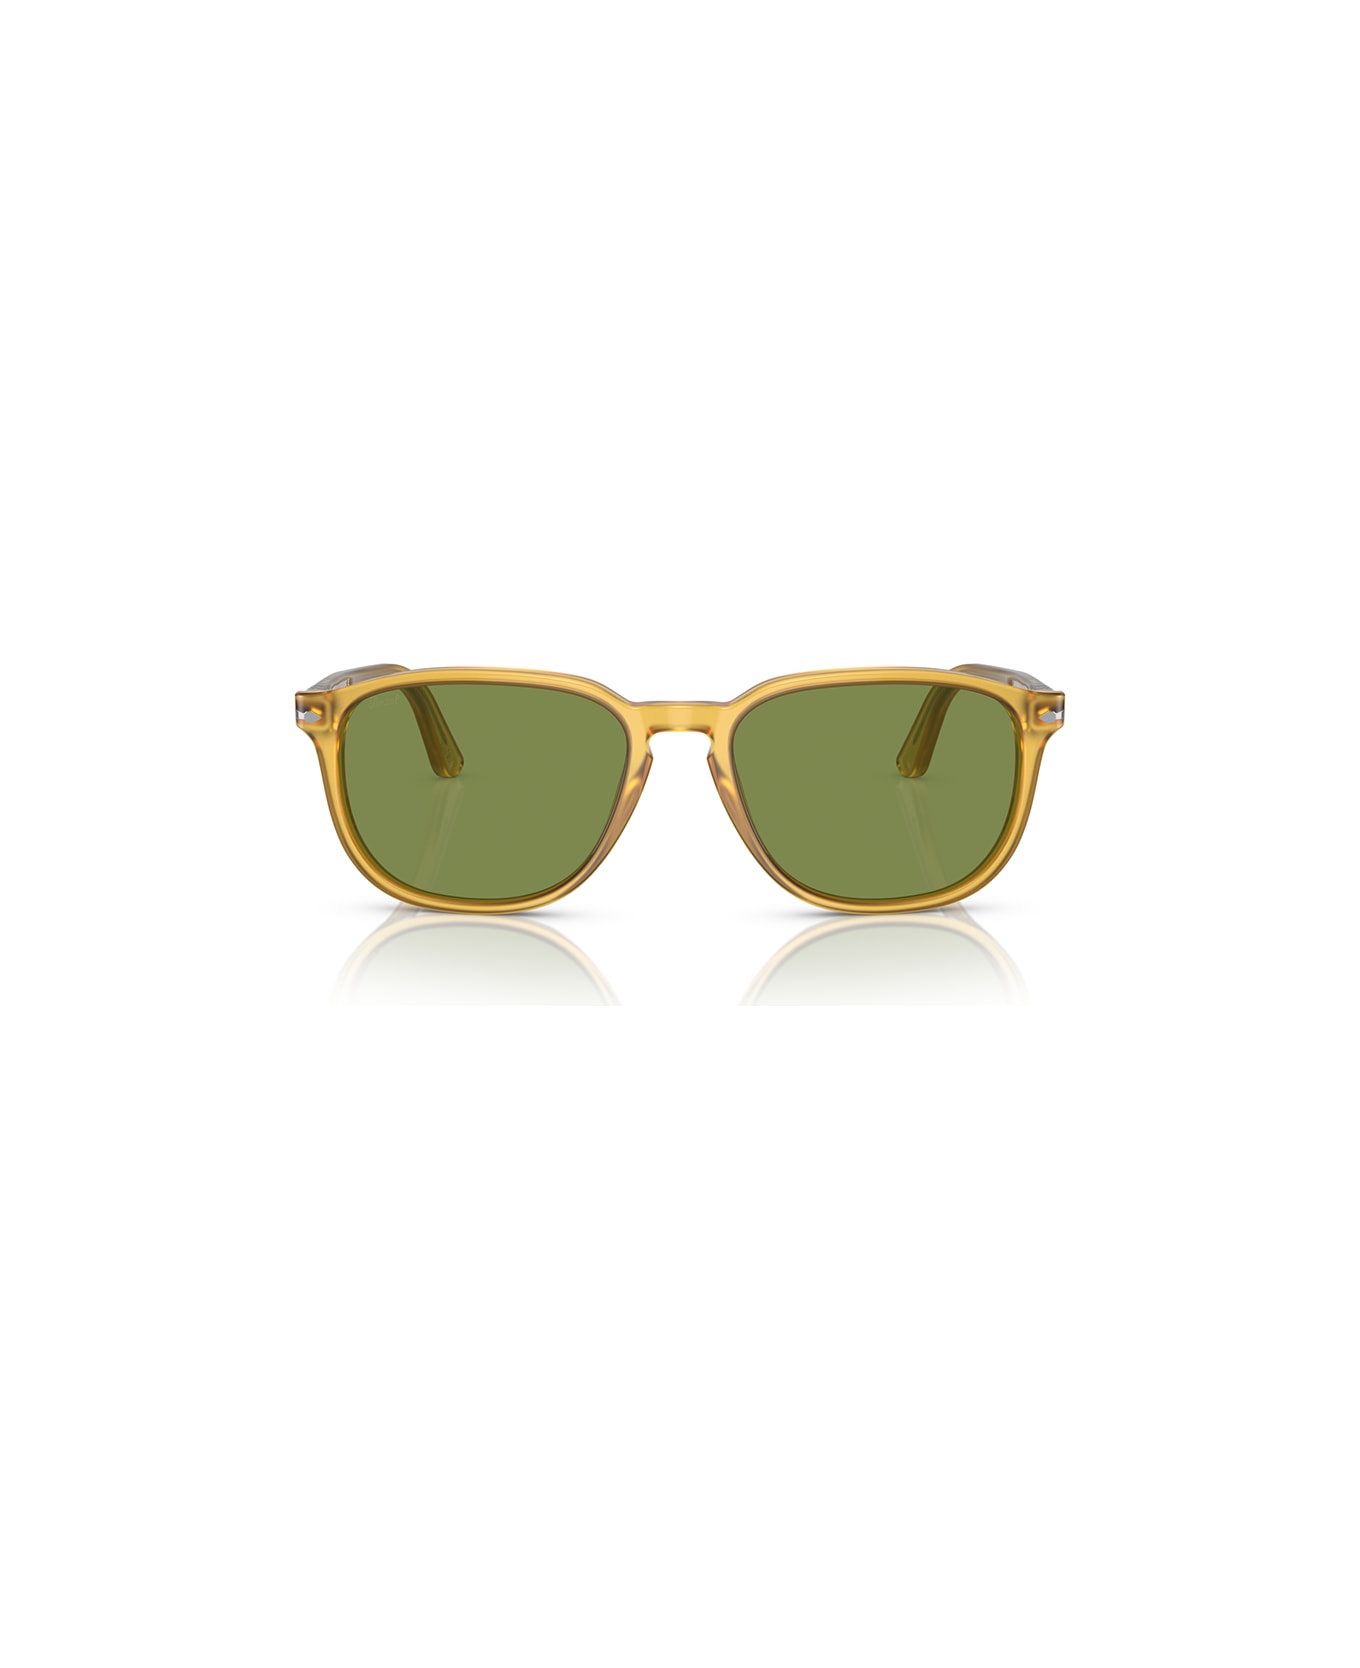 Persol Sunglasses - Miele/Verde